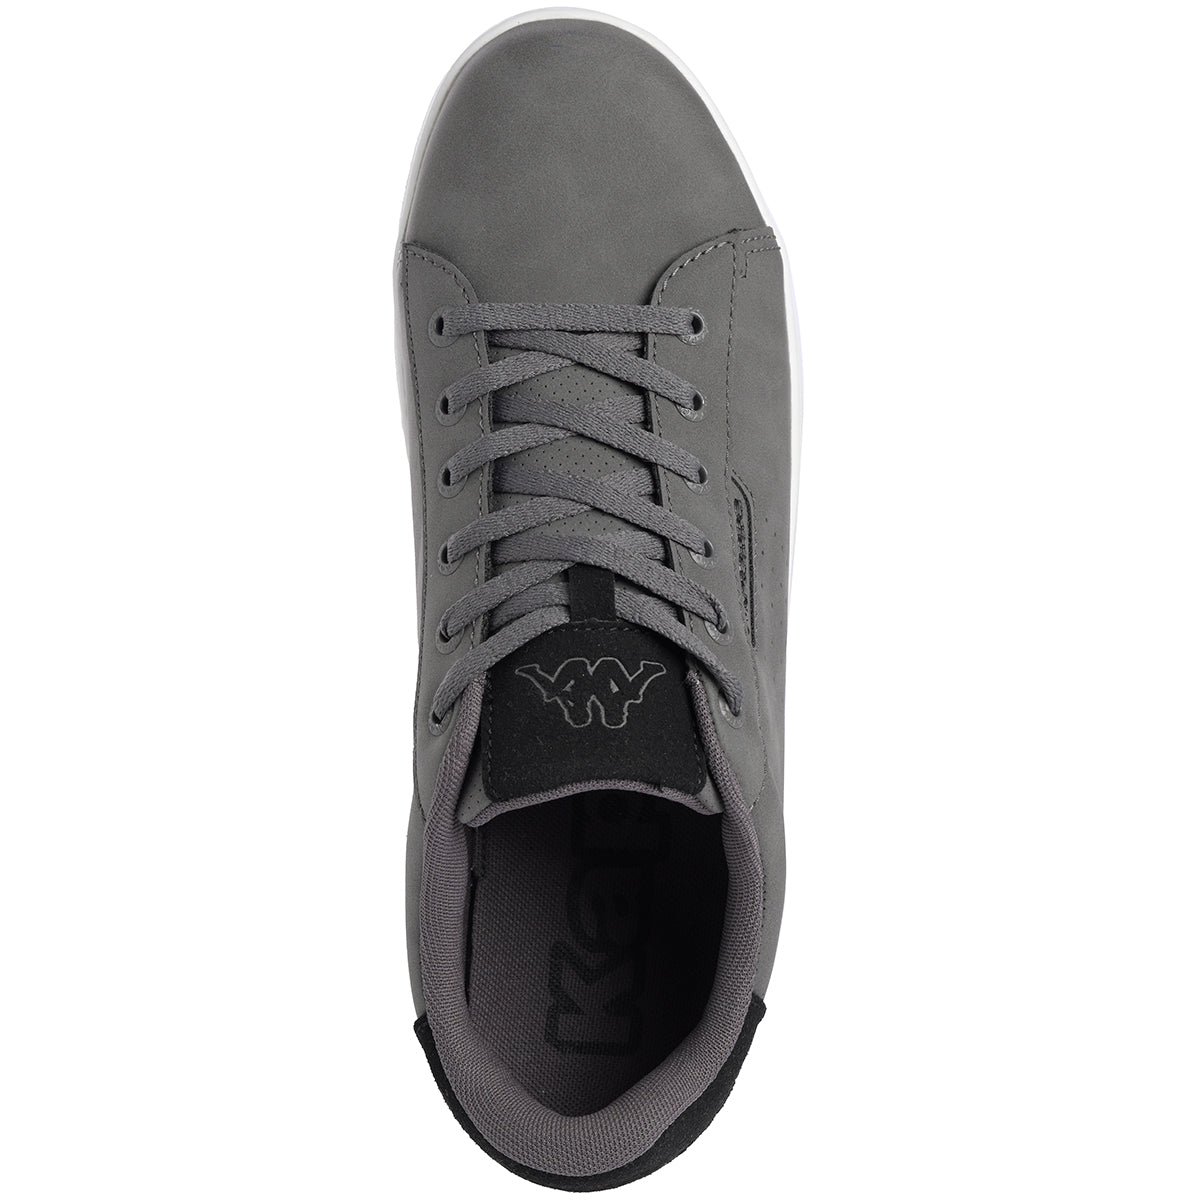 Zapatos lifestyle grises Tchouri de hombre - imagen 4